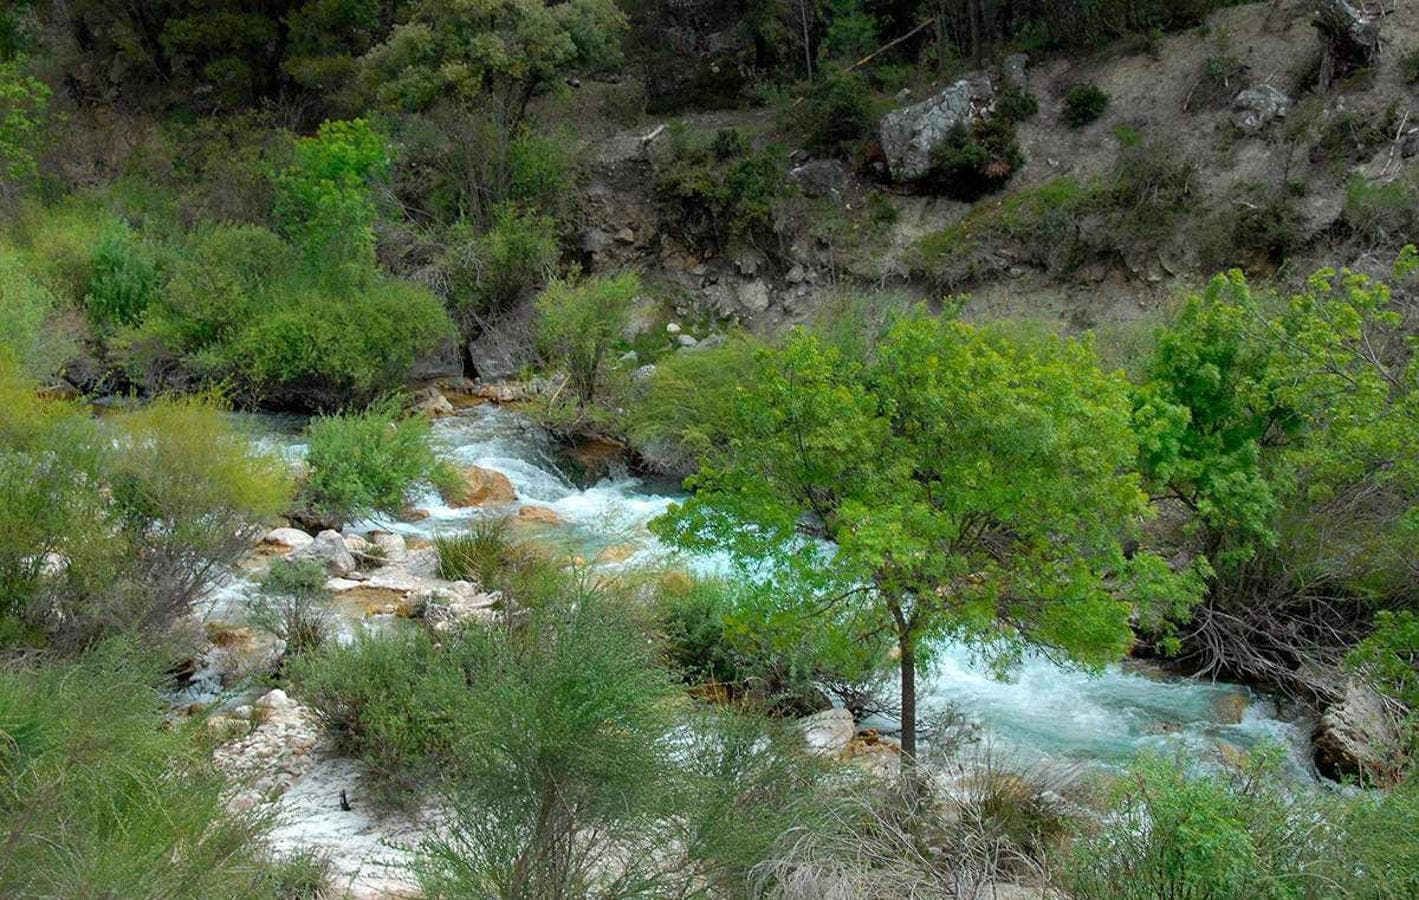 Los espacios naturales se han convertido en una nueva fuente de atracción hacia el medio rural y un aliciente económico para los pueblos. FOTO: Parque Natural de la Sierra de Castril, Granada.